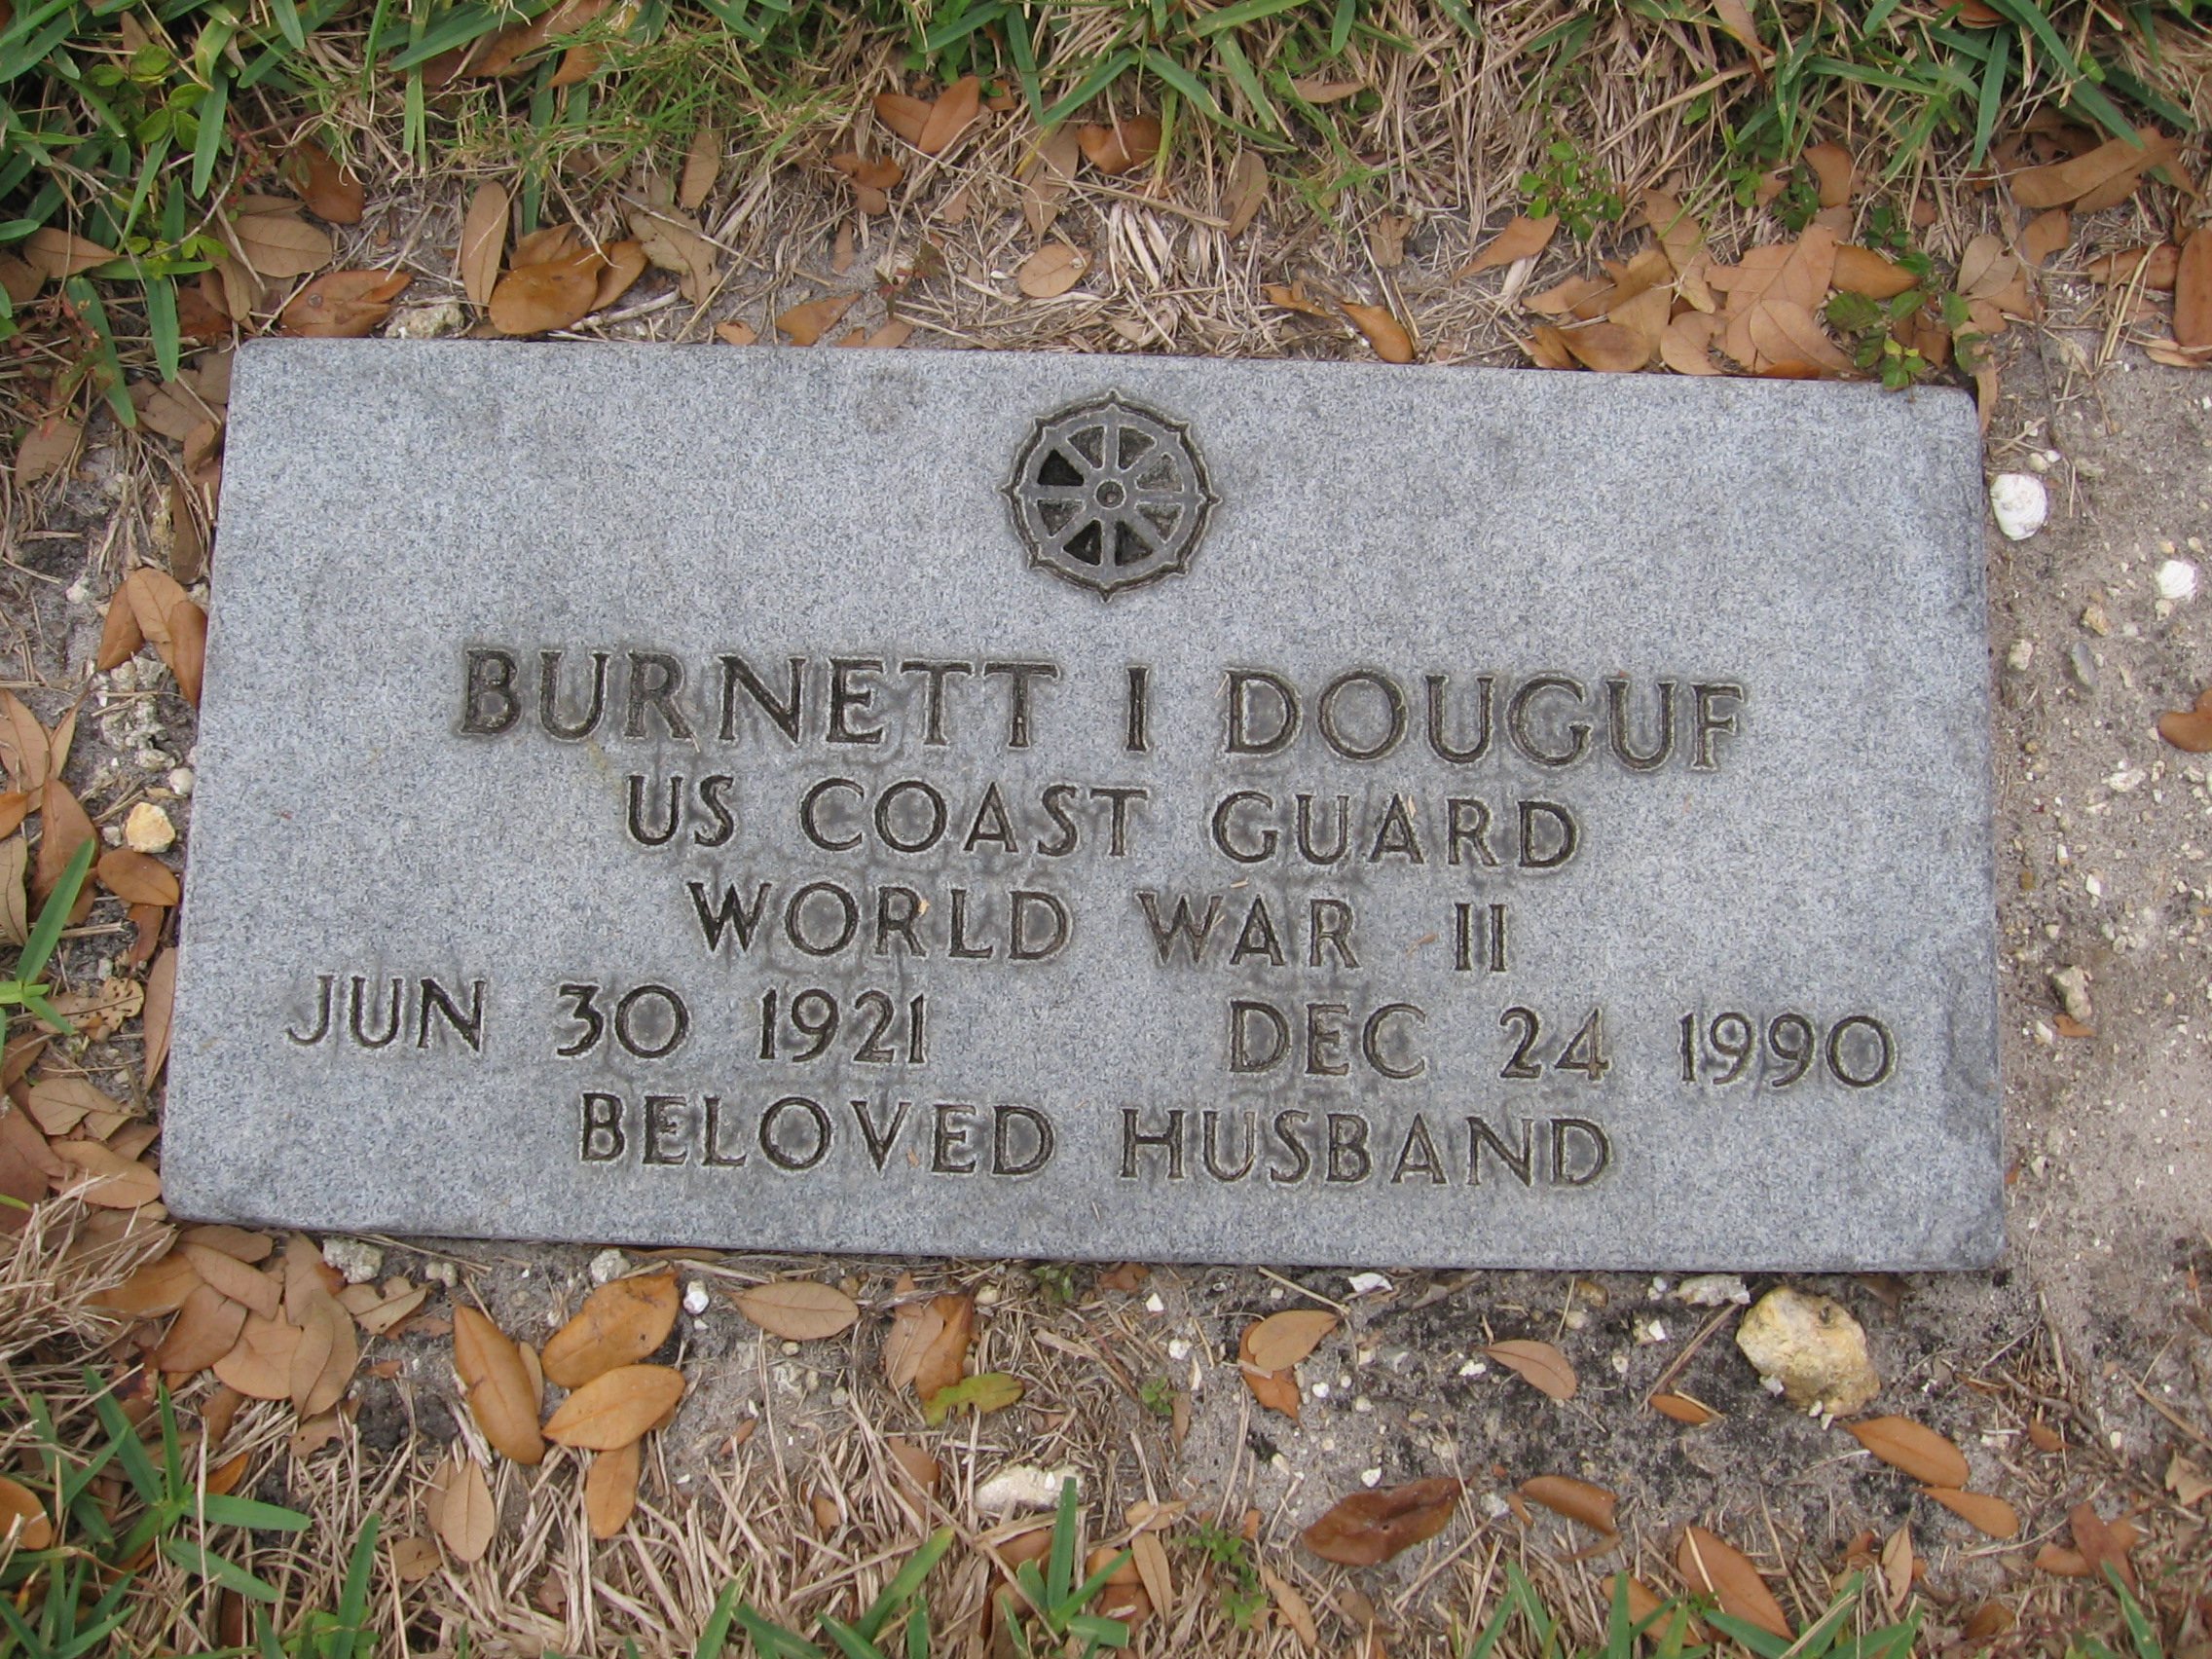 Burnett I Douguf